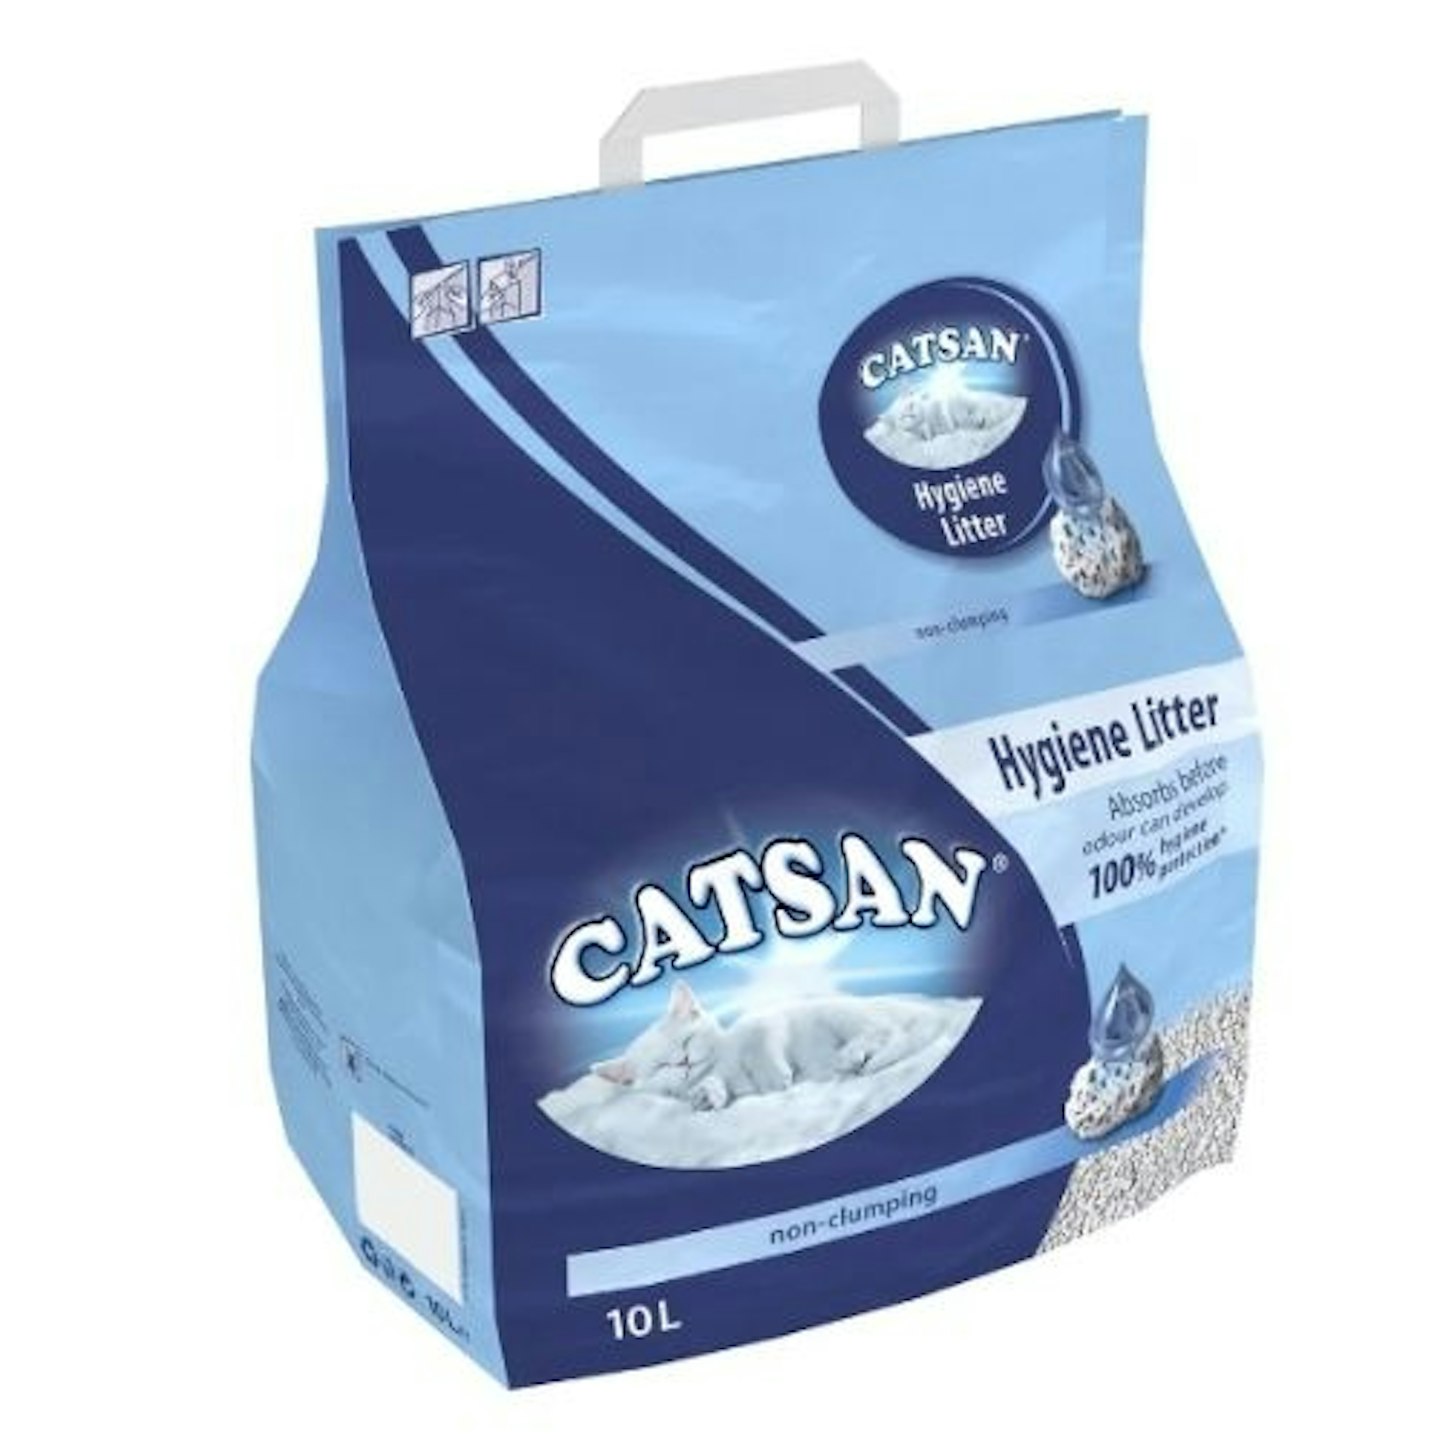 Catsan Hygiene Cat Litter bag